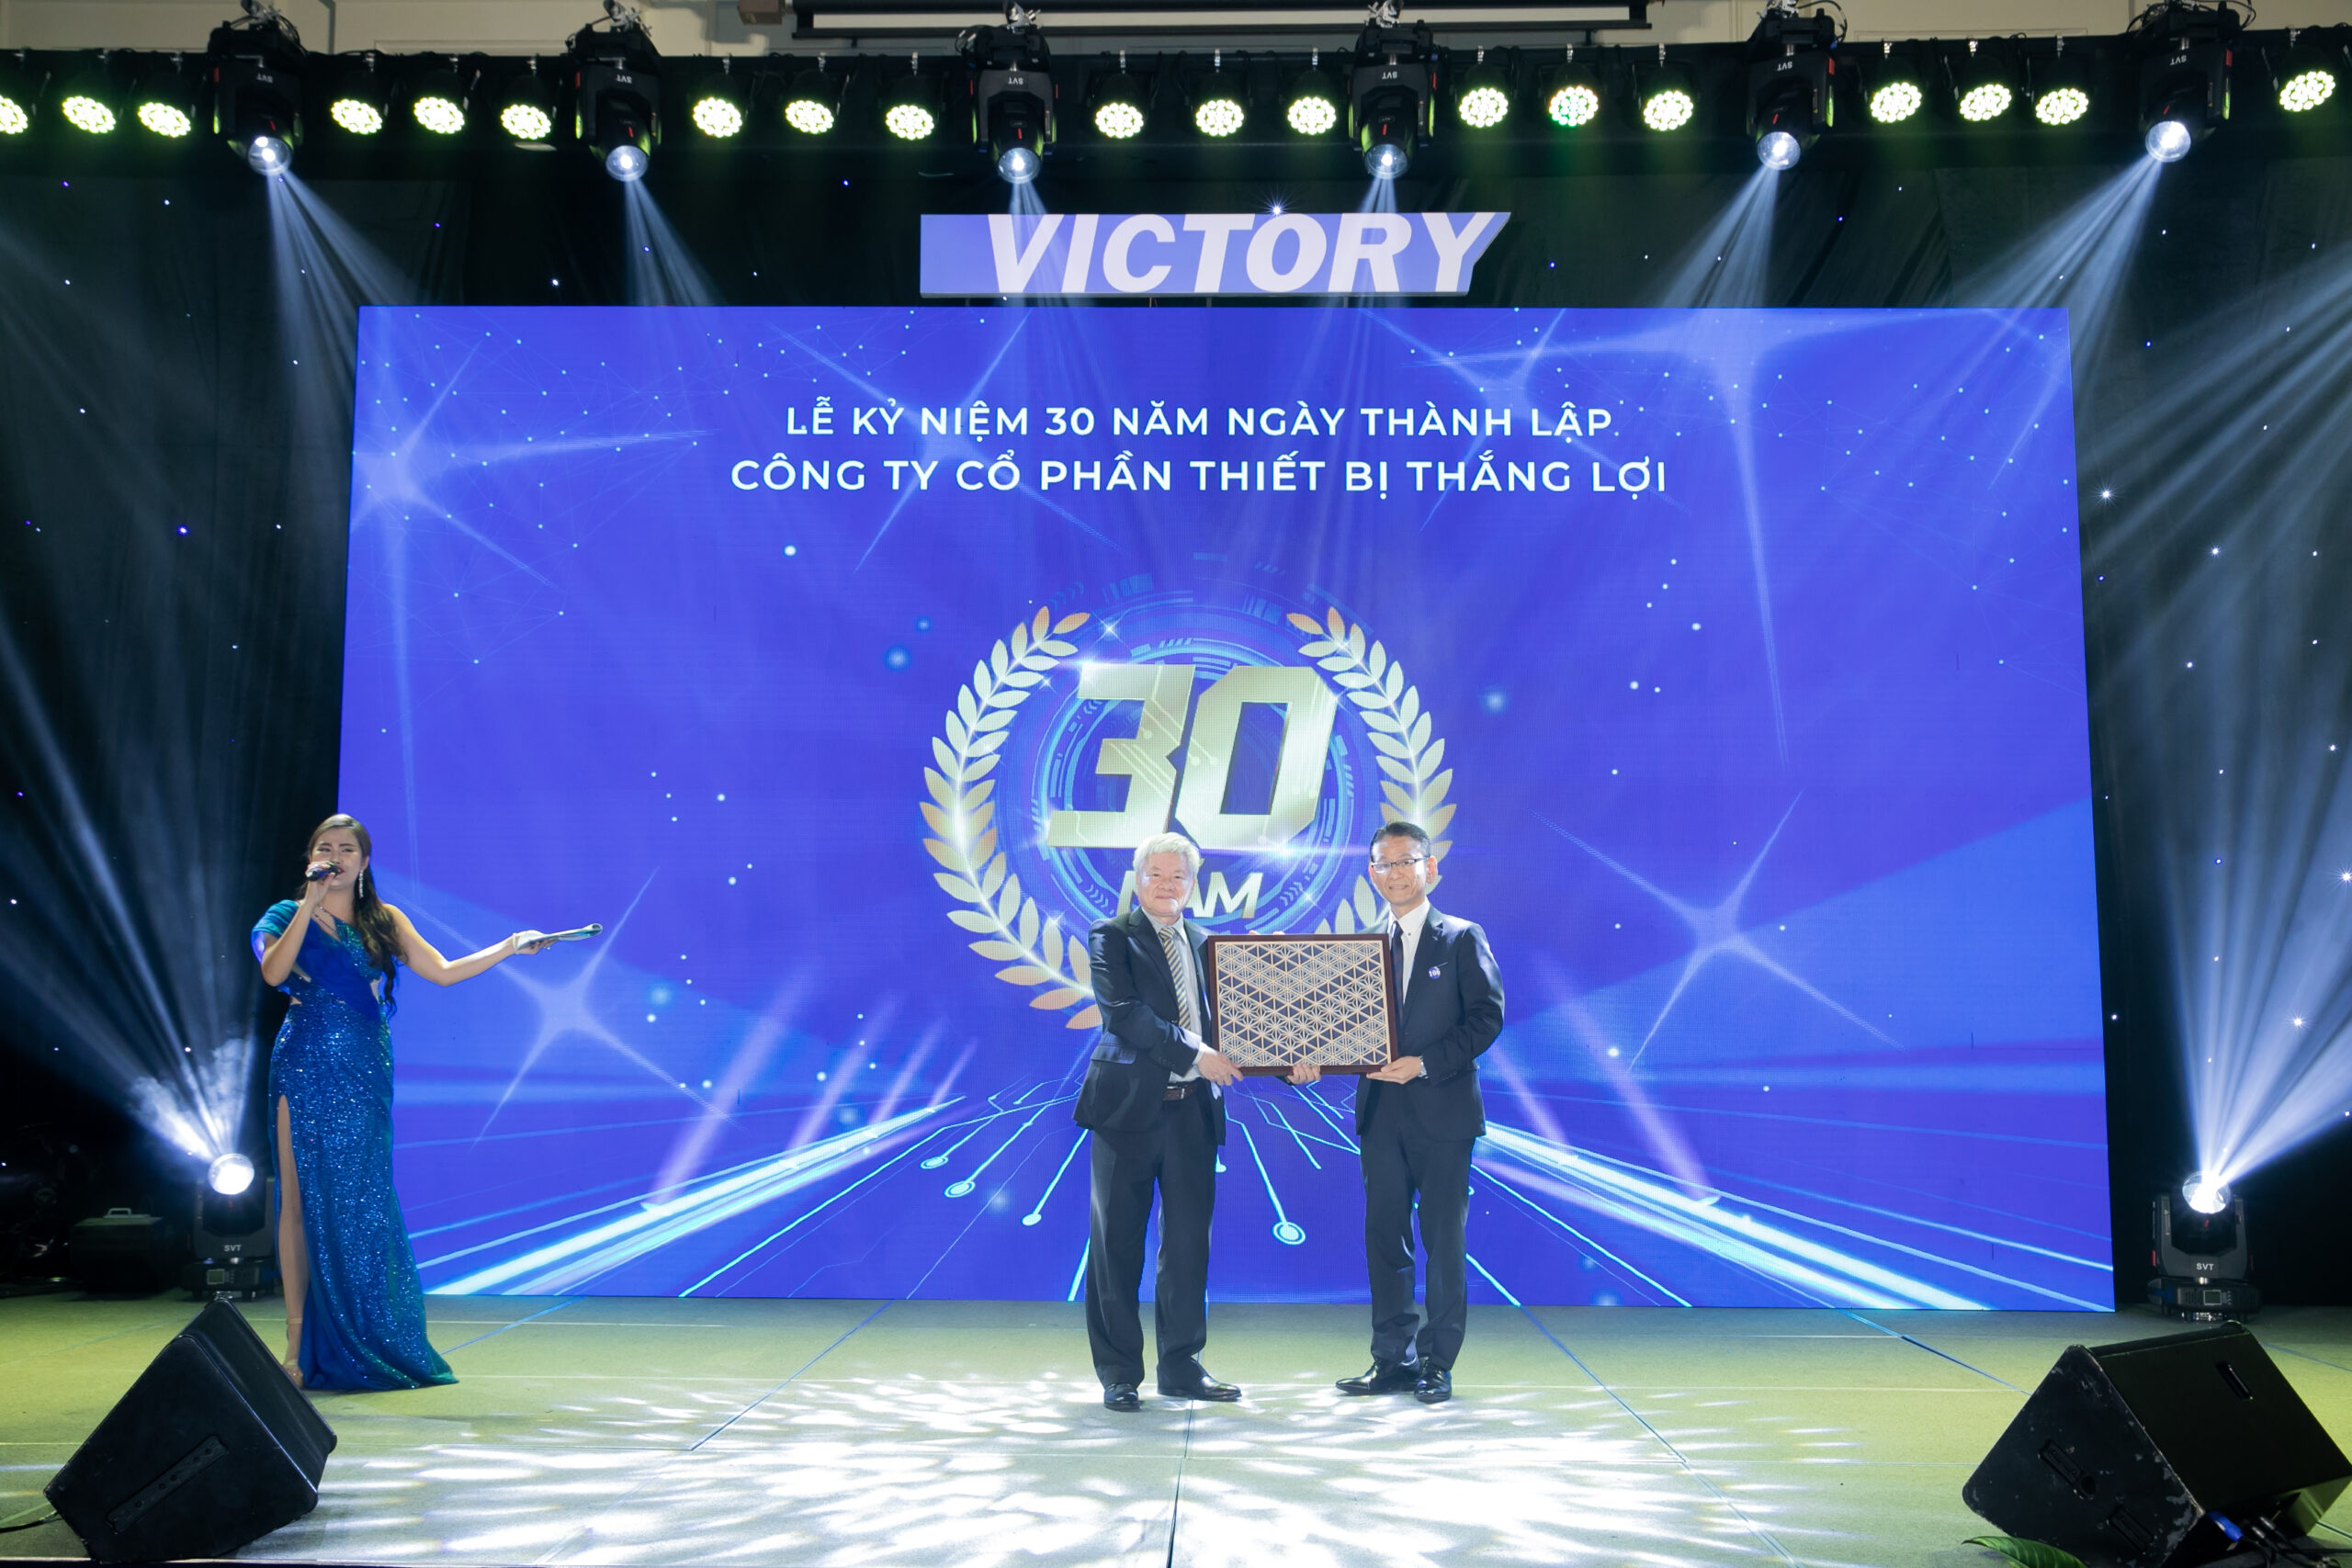 VICTORY 179 scaled - Thắng Lợi - Victory tổ chức lễ kỉ niệm 30 năm thành lập